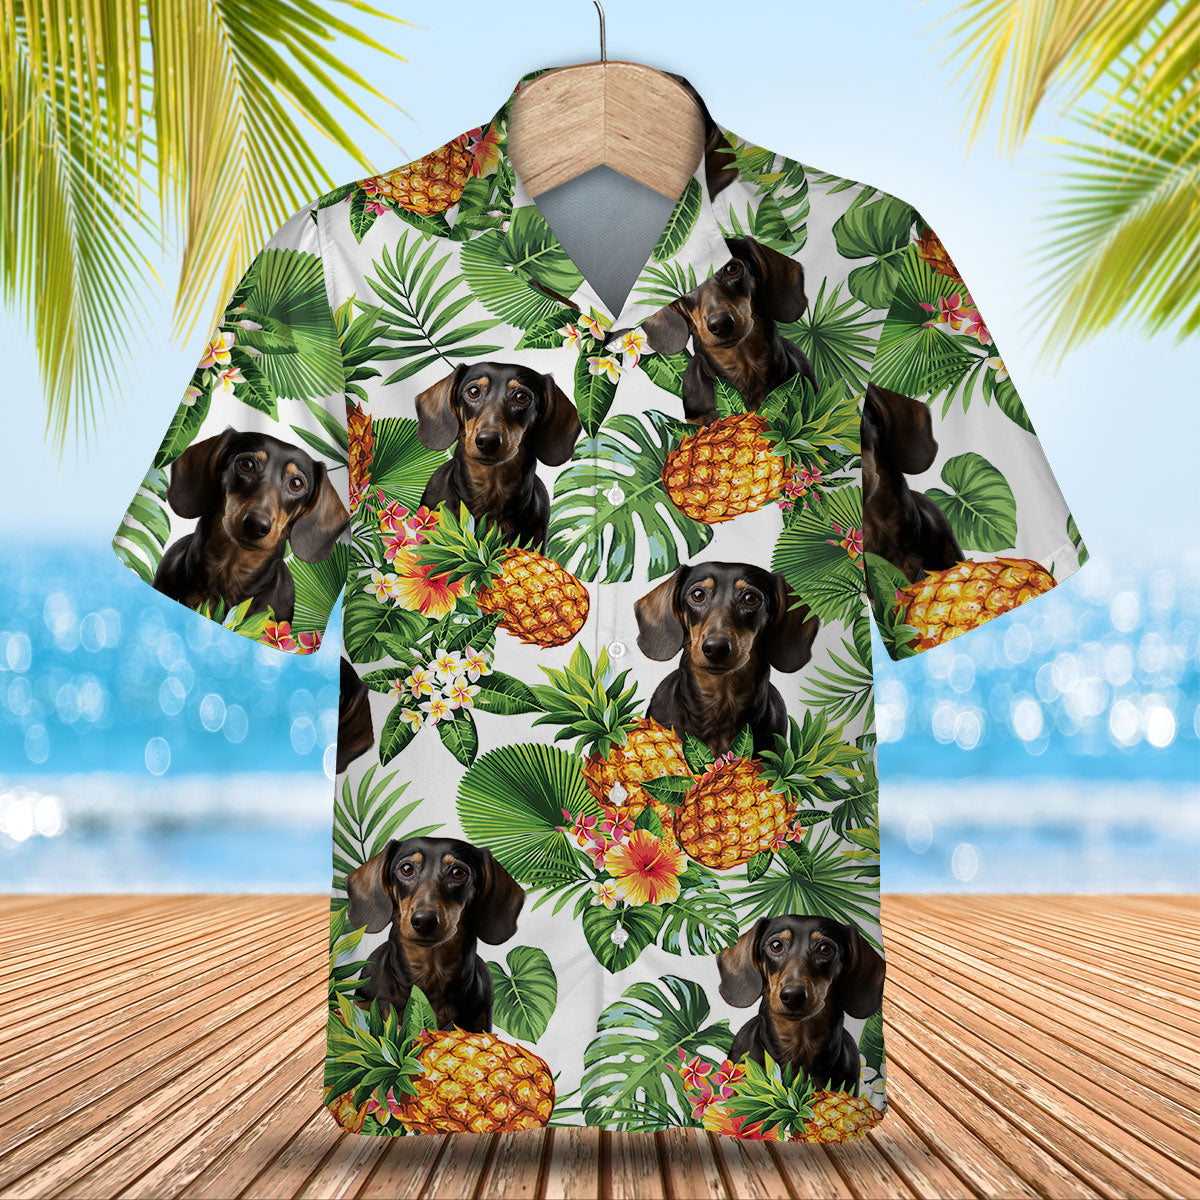 Dachshund 1 AI - Tropical Pattern Hawaiian Shirt